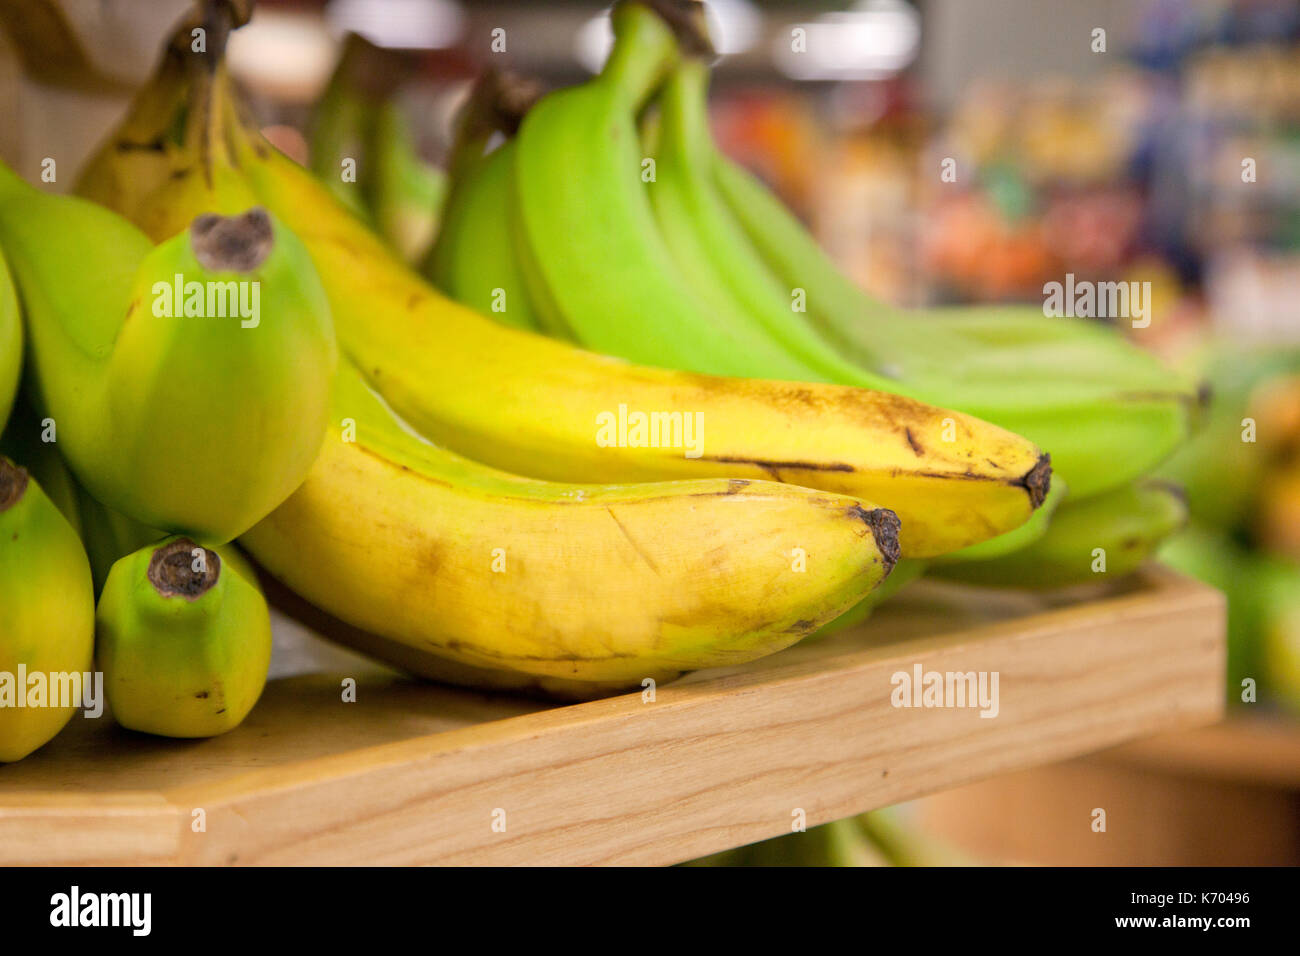 Los racimos de plátanos verdes y amarillos imperfecto, en un almacén en una estantería Foto de stock